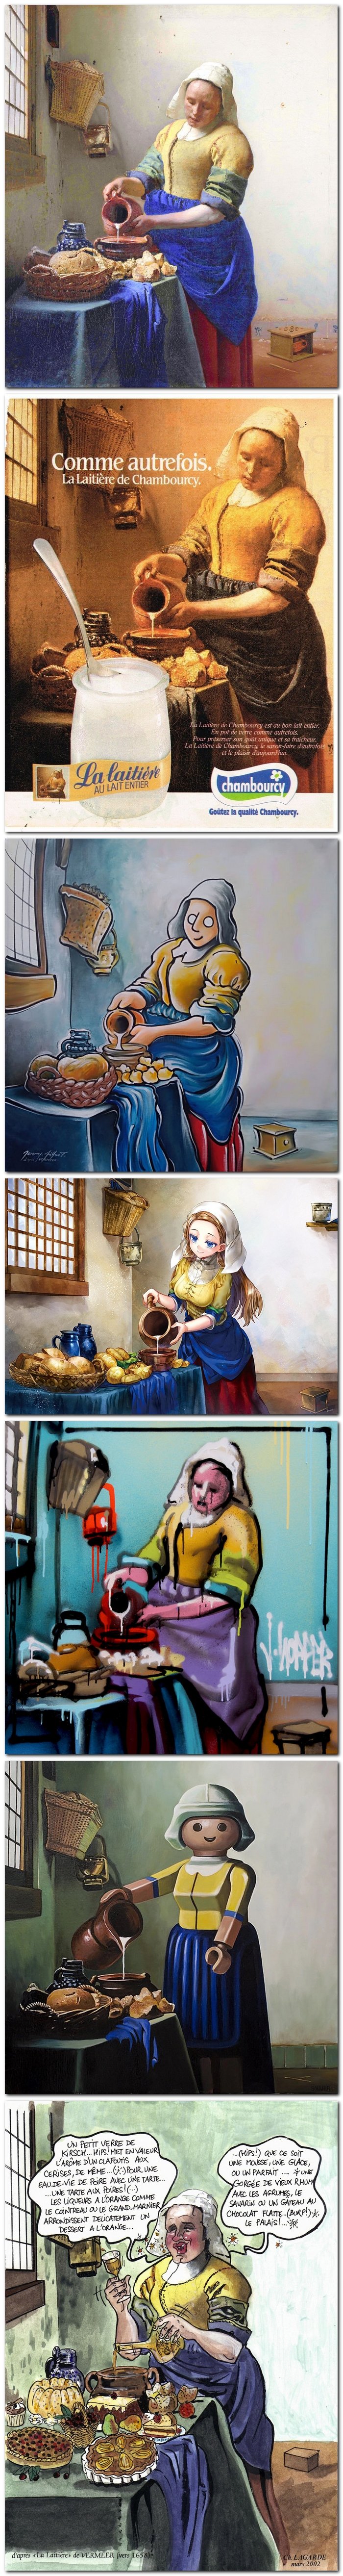 La laitière de Johannes Vermeer (vers 1658) et quelques-unes de ses parodies